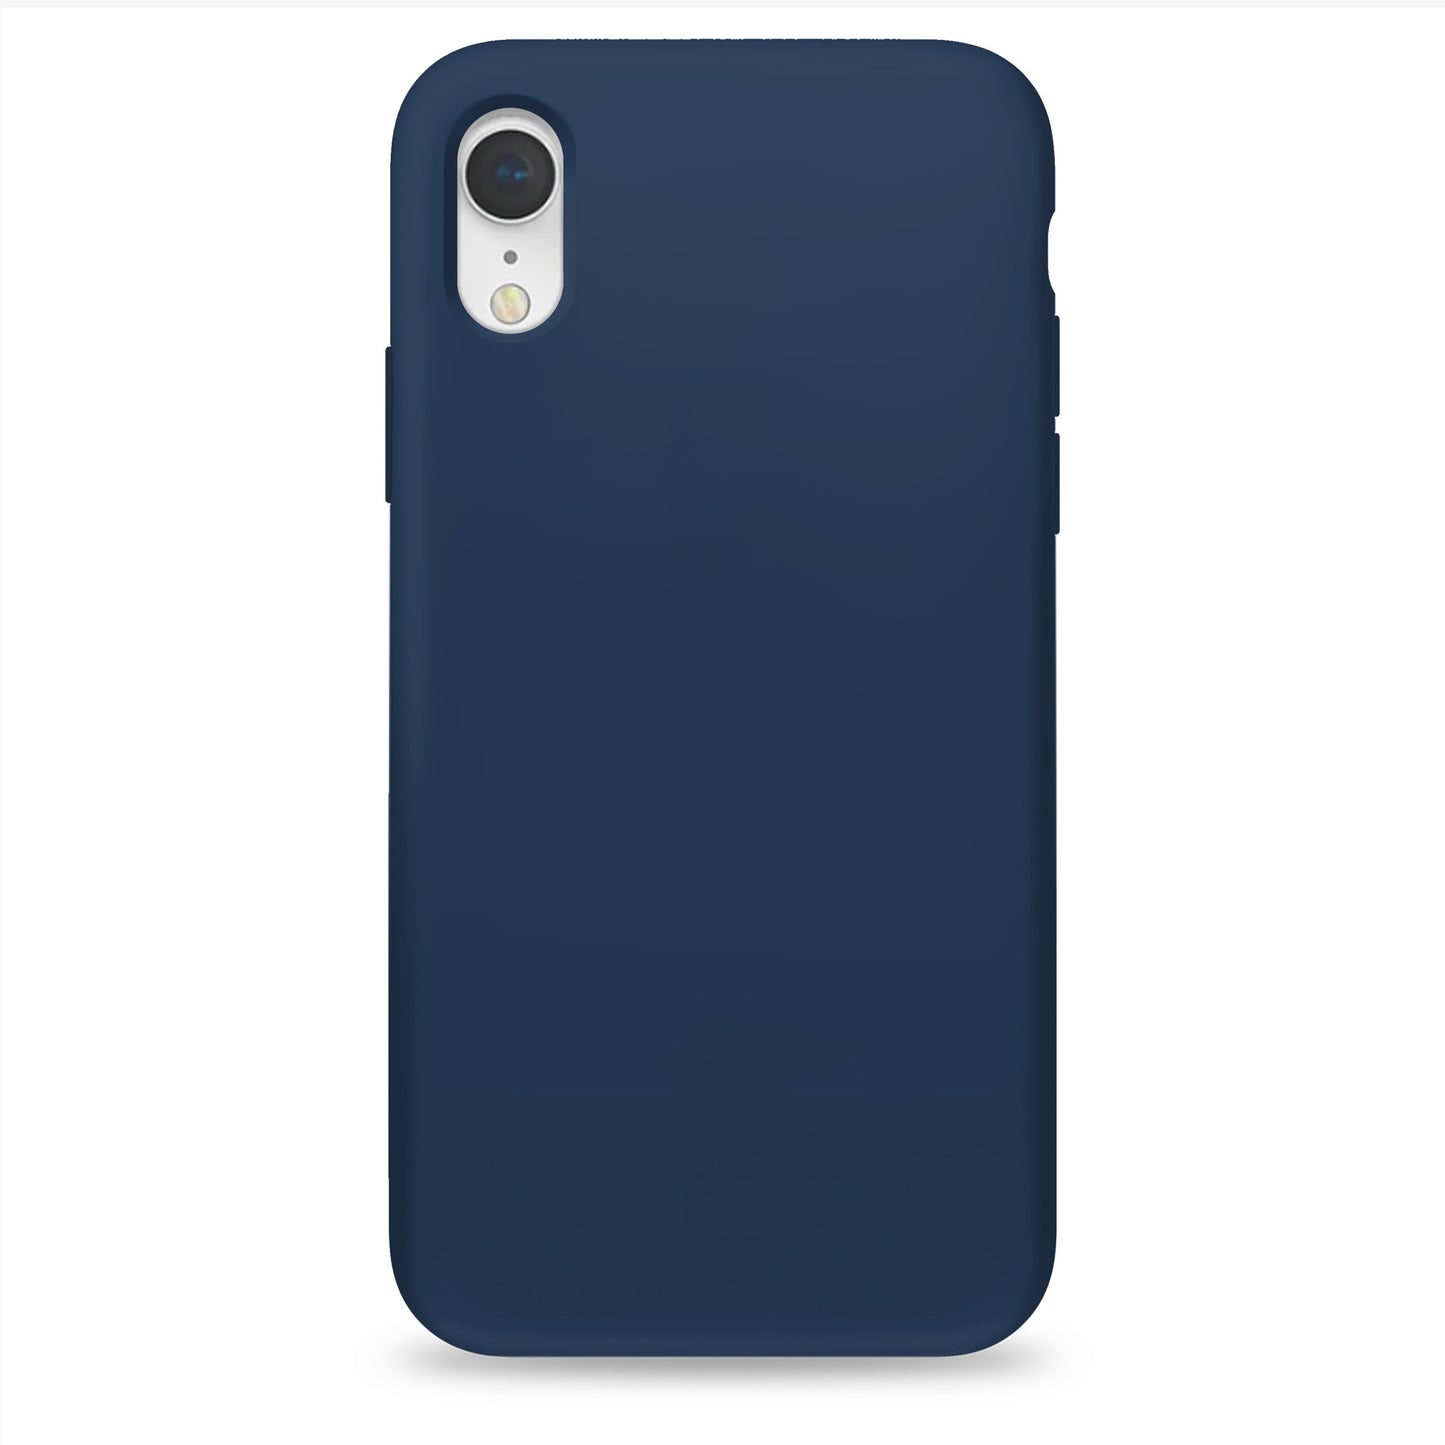 Cobalt Blue Silikon Hülle für iPhone